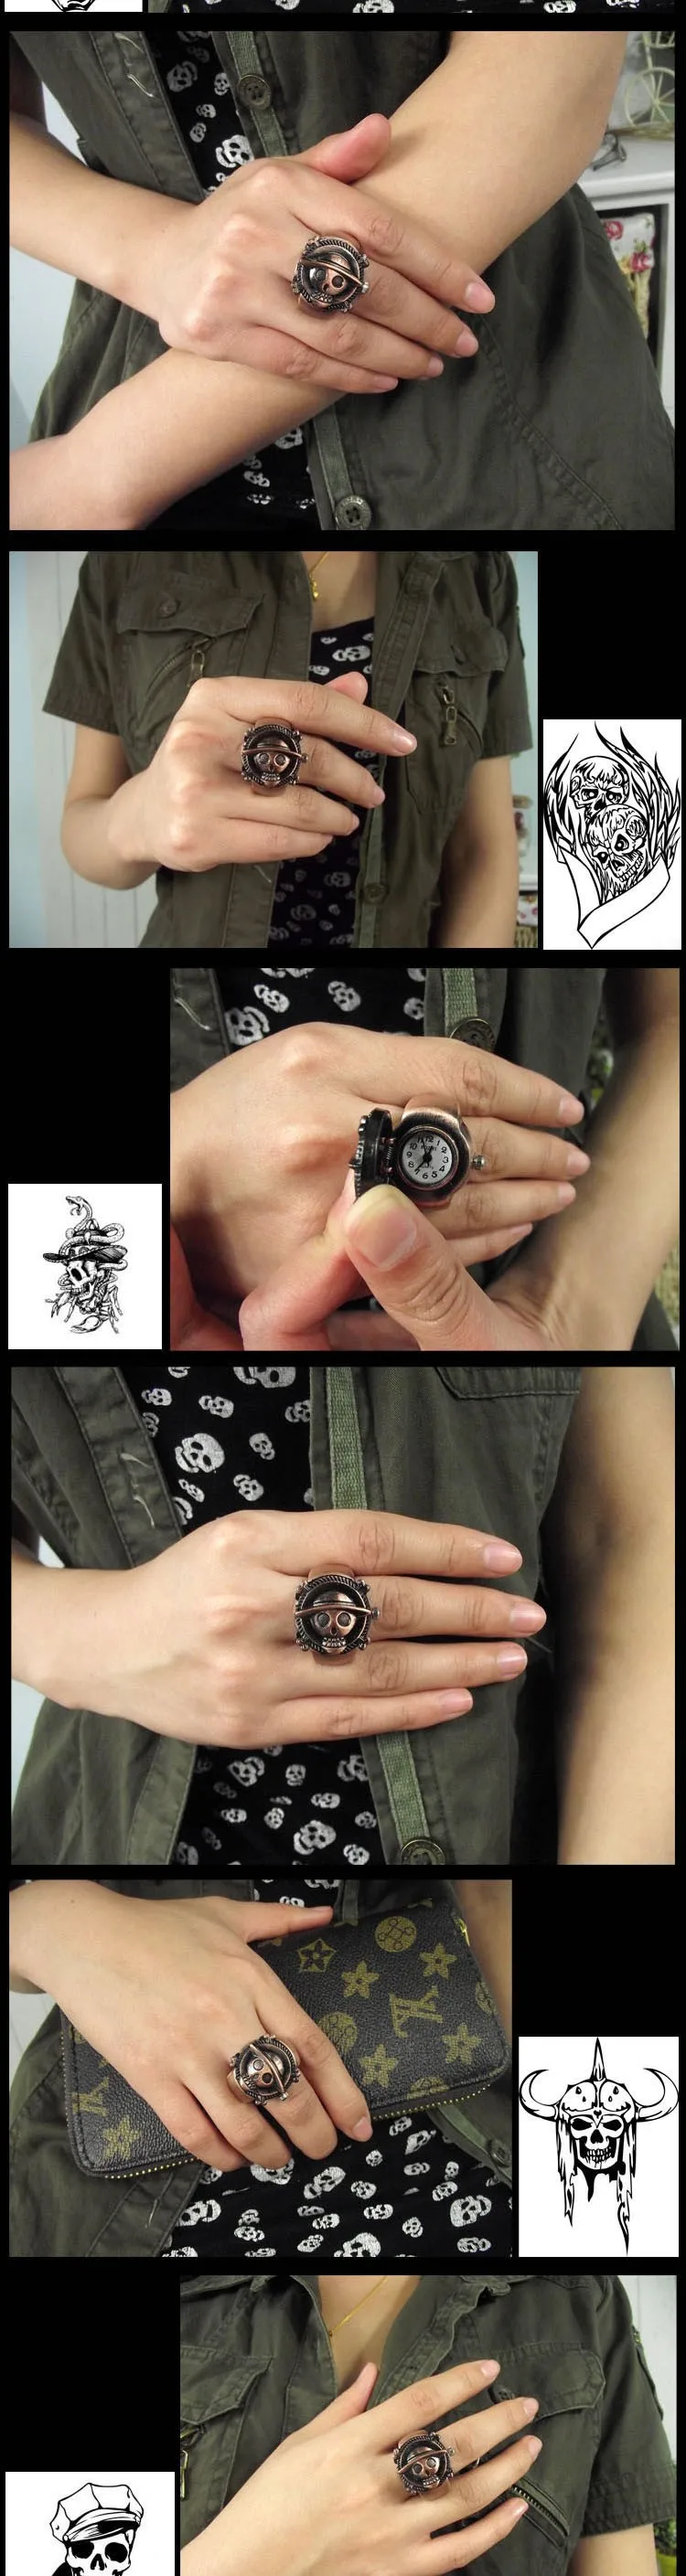 Кольцо часы творческой личности призрак головы череп Strawhat Луффи One Piece мультфильм кольцо часы мини мужского и женского 8 видов стилей